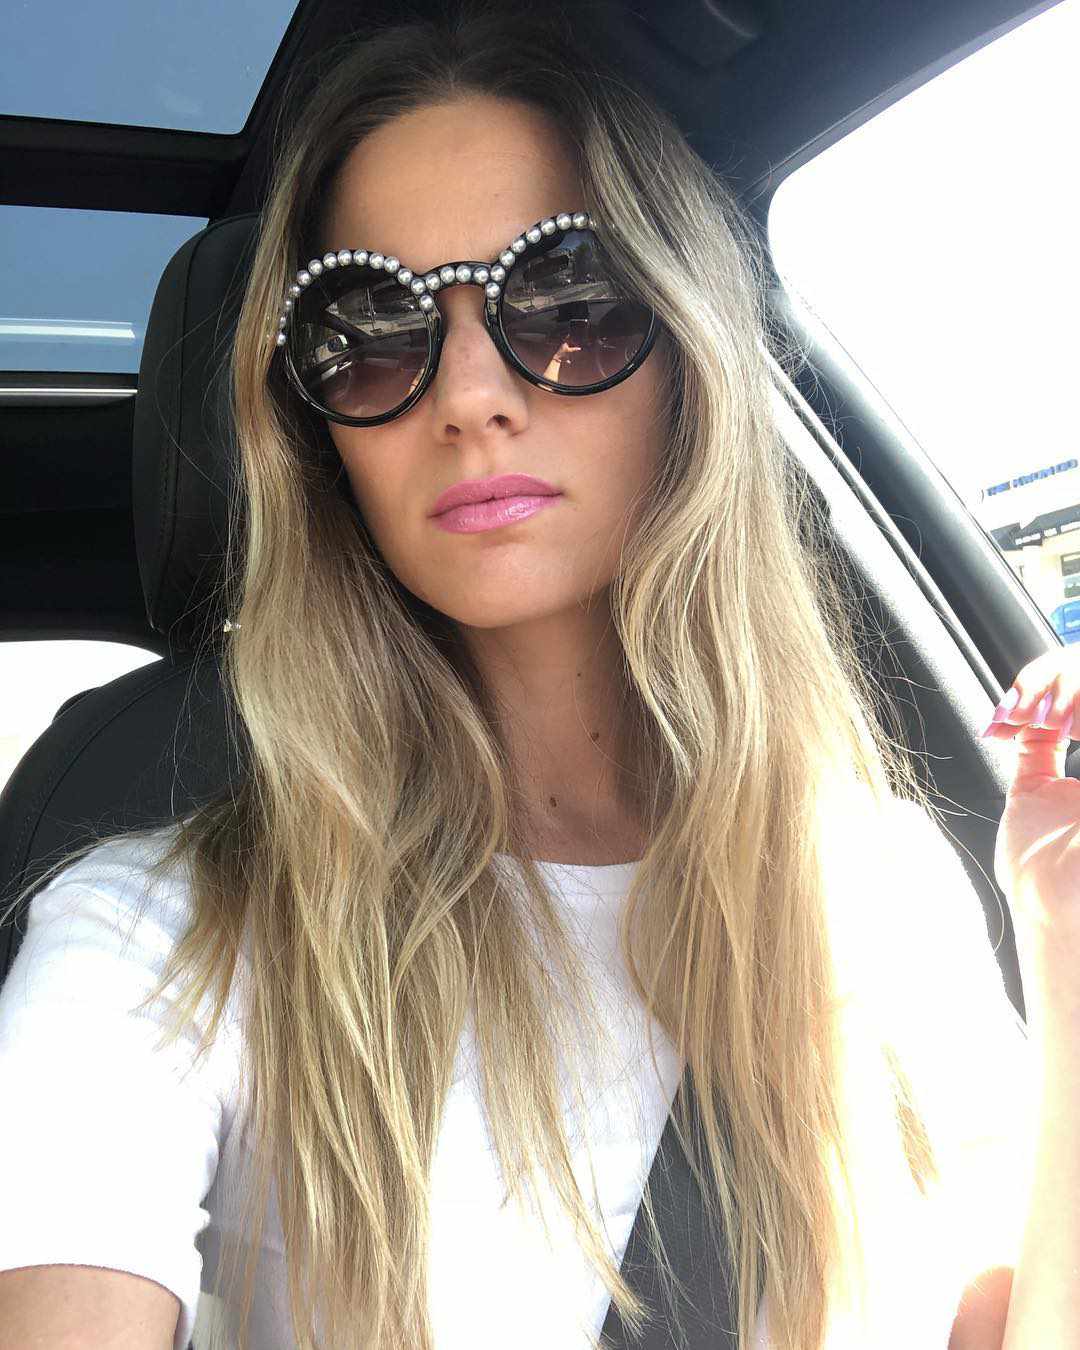 Frau mit Sonnenbrille in einem Auto sitzend